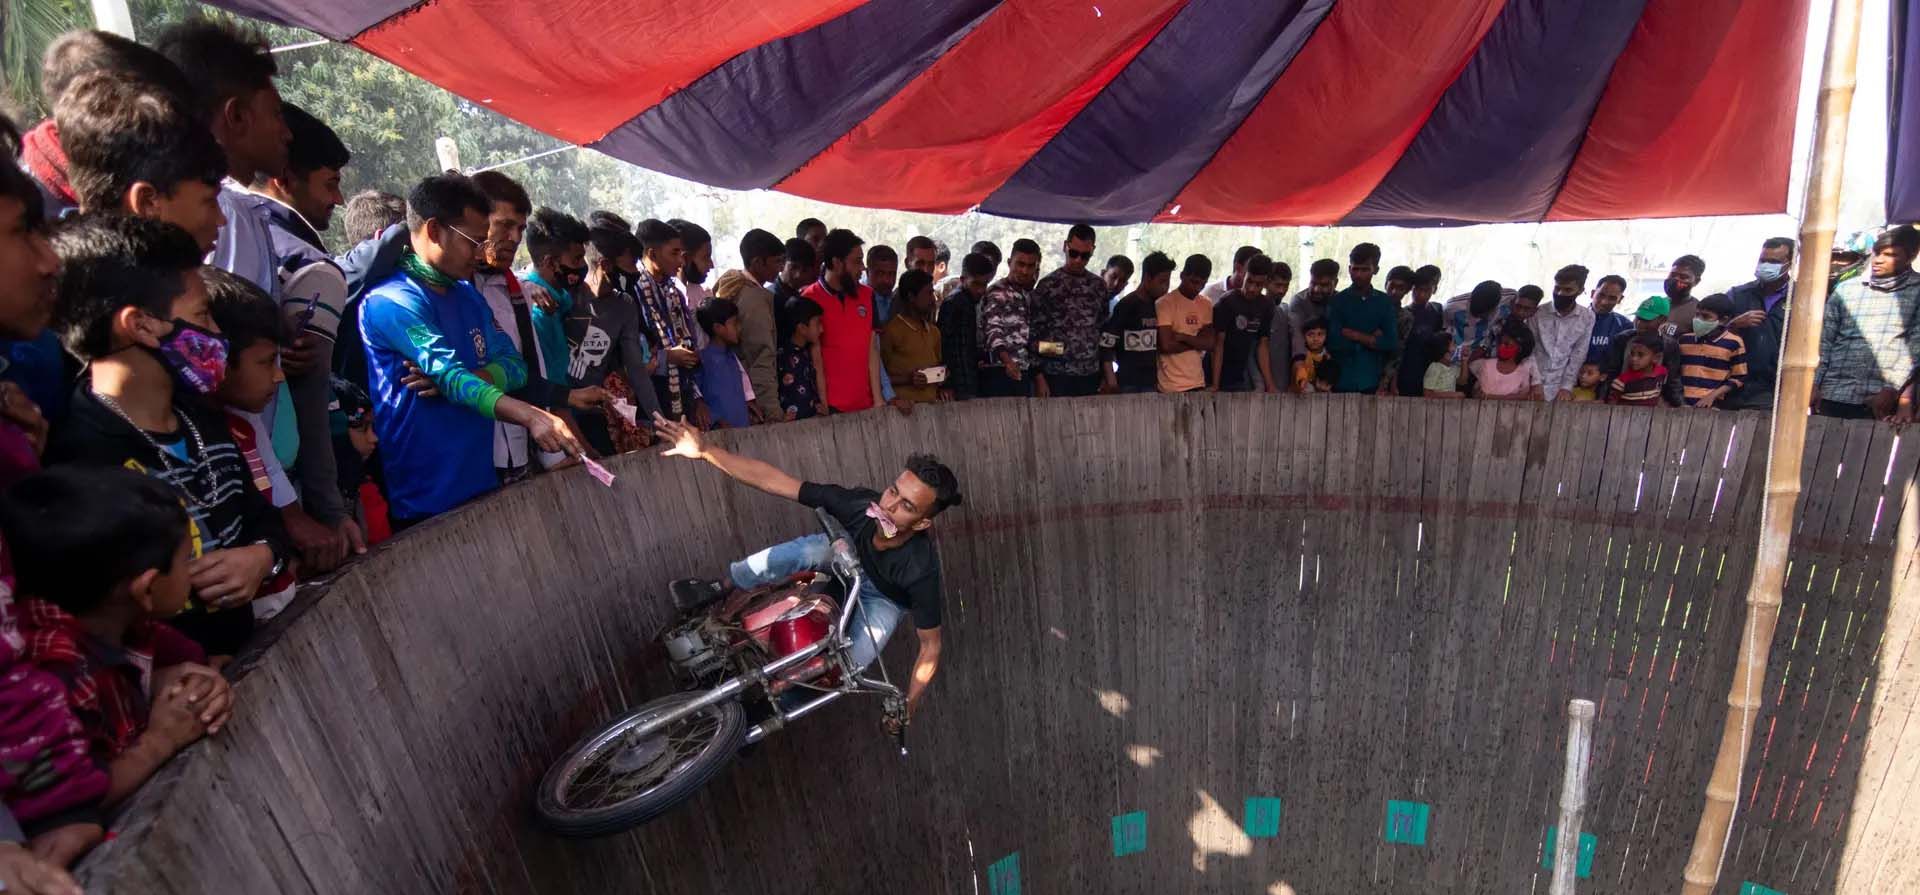 Audaces motociclistas entretienen a los espectadores conduciendo alrededor de un muro vertical de la muerte, mientras reciben dinero de la gente, Khulna, Bangladesh. Fotografía: Joy Saha/ZUMA Press Wire/REX/Shutterstock